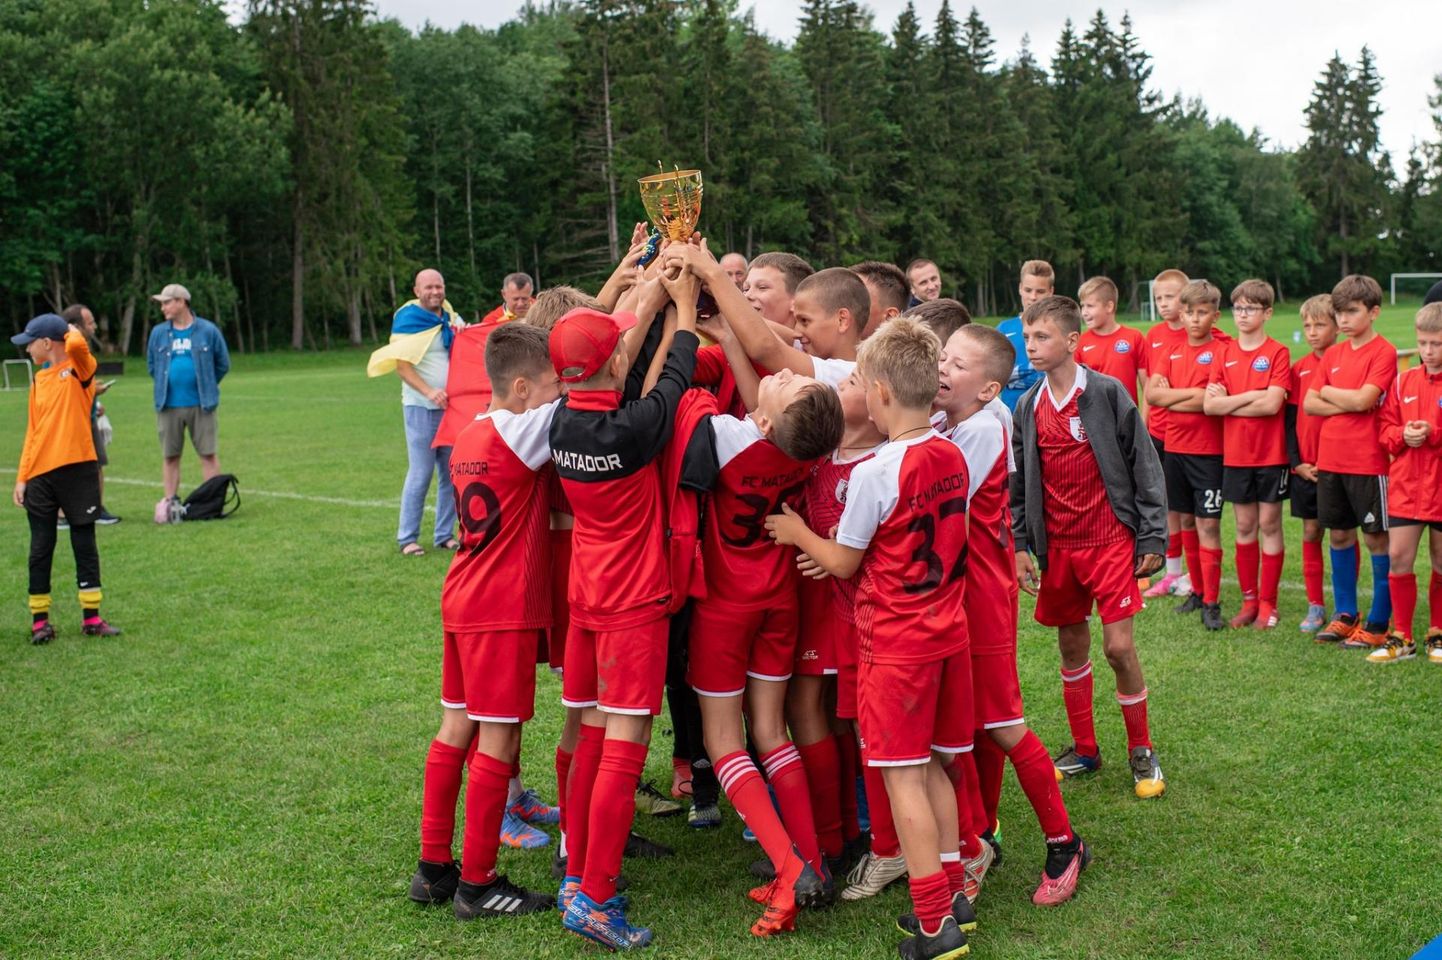 Perejaslavi 11- ja 12aastased jalgpallipoisid võitsid eelmisel aastal Paides Exmeti Ülejõe karika võistlustel kolmanda koha. Hea tulemus innustab neid osalema samal võistlusel ka tänavu.